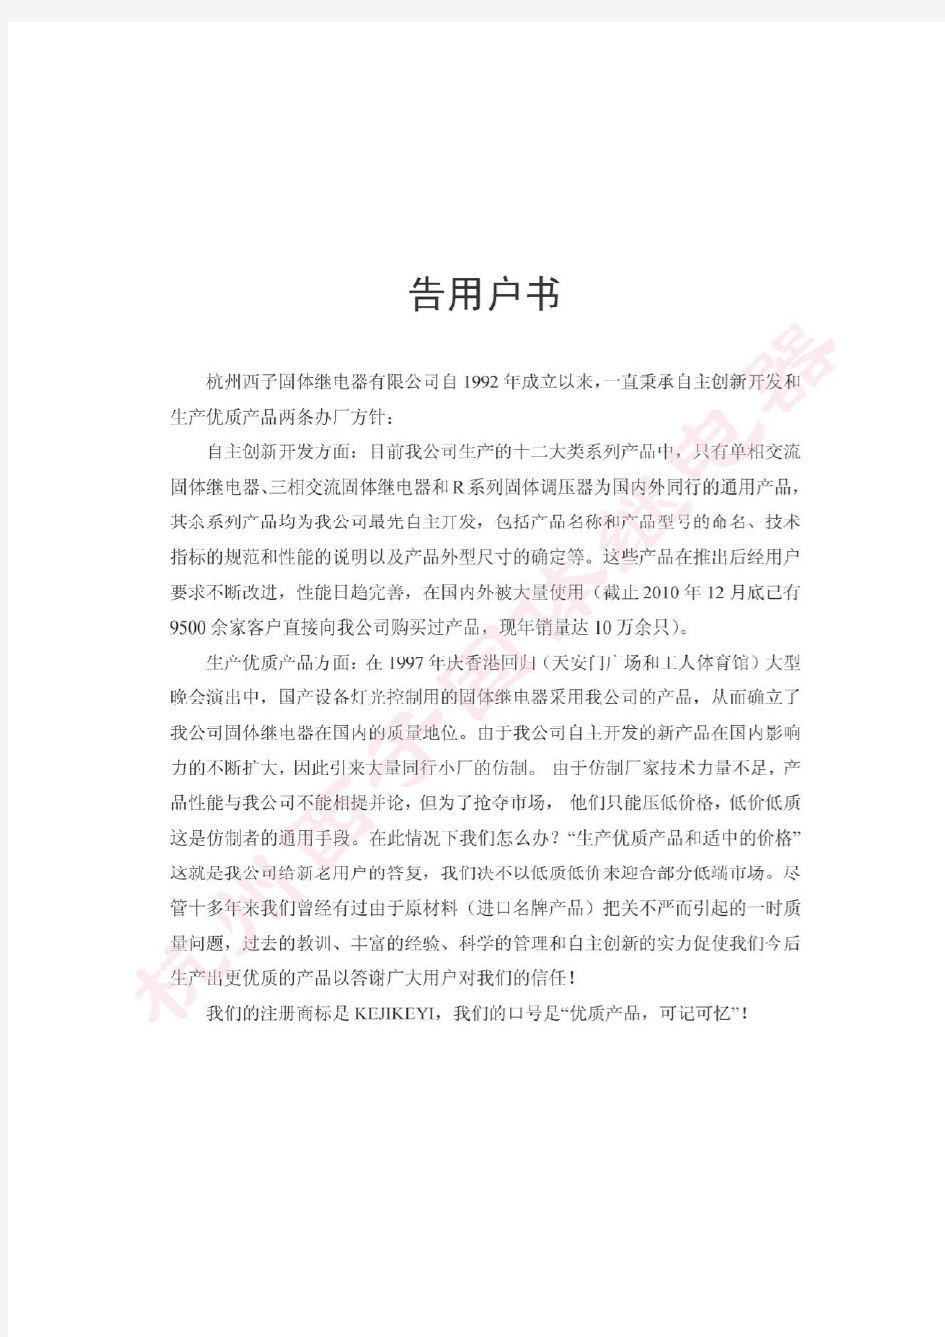 杭州西子固体继电器产品说明书(2010)